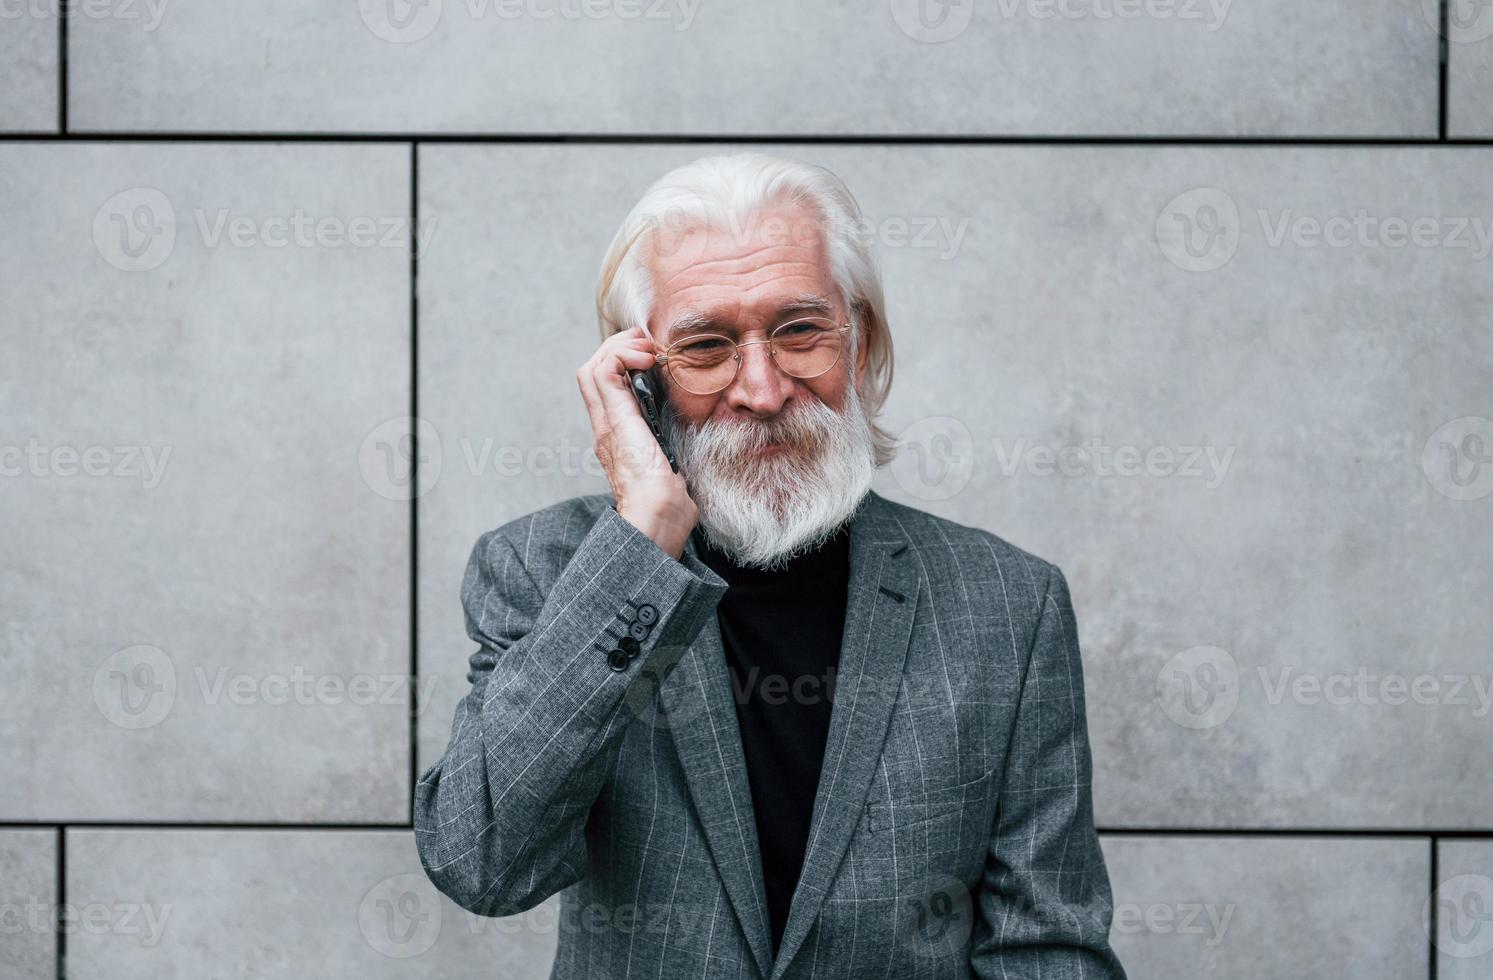 un hombre de negocios de alto nivel con ropa formal, con cabello gris y barba, habla por teléfono al aire libre foto